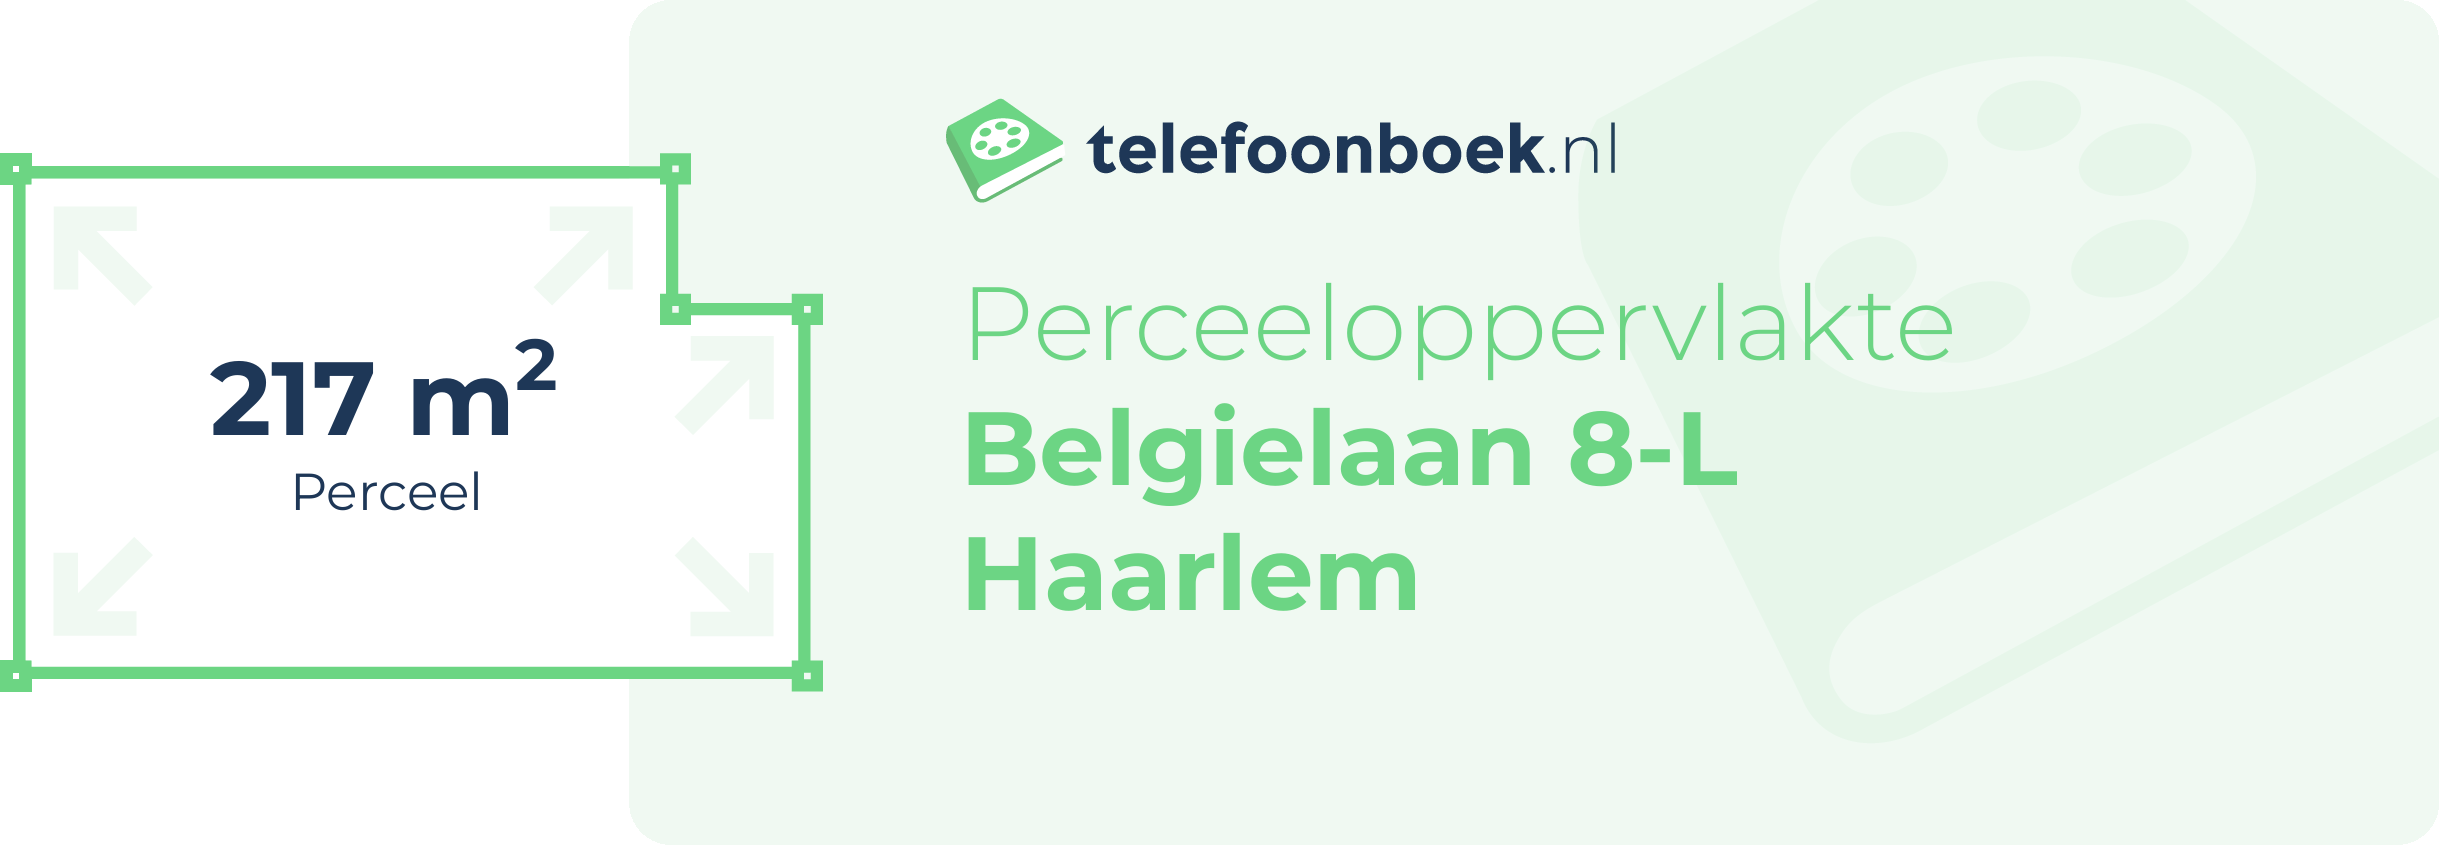 Perceeloppervlakte Belgielaan 8-L Haarlem